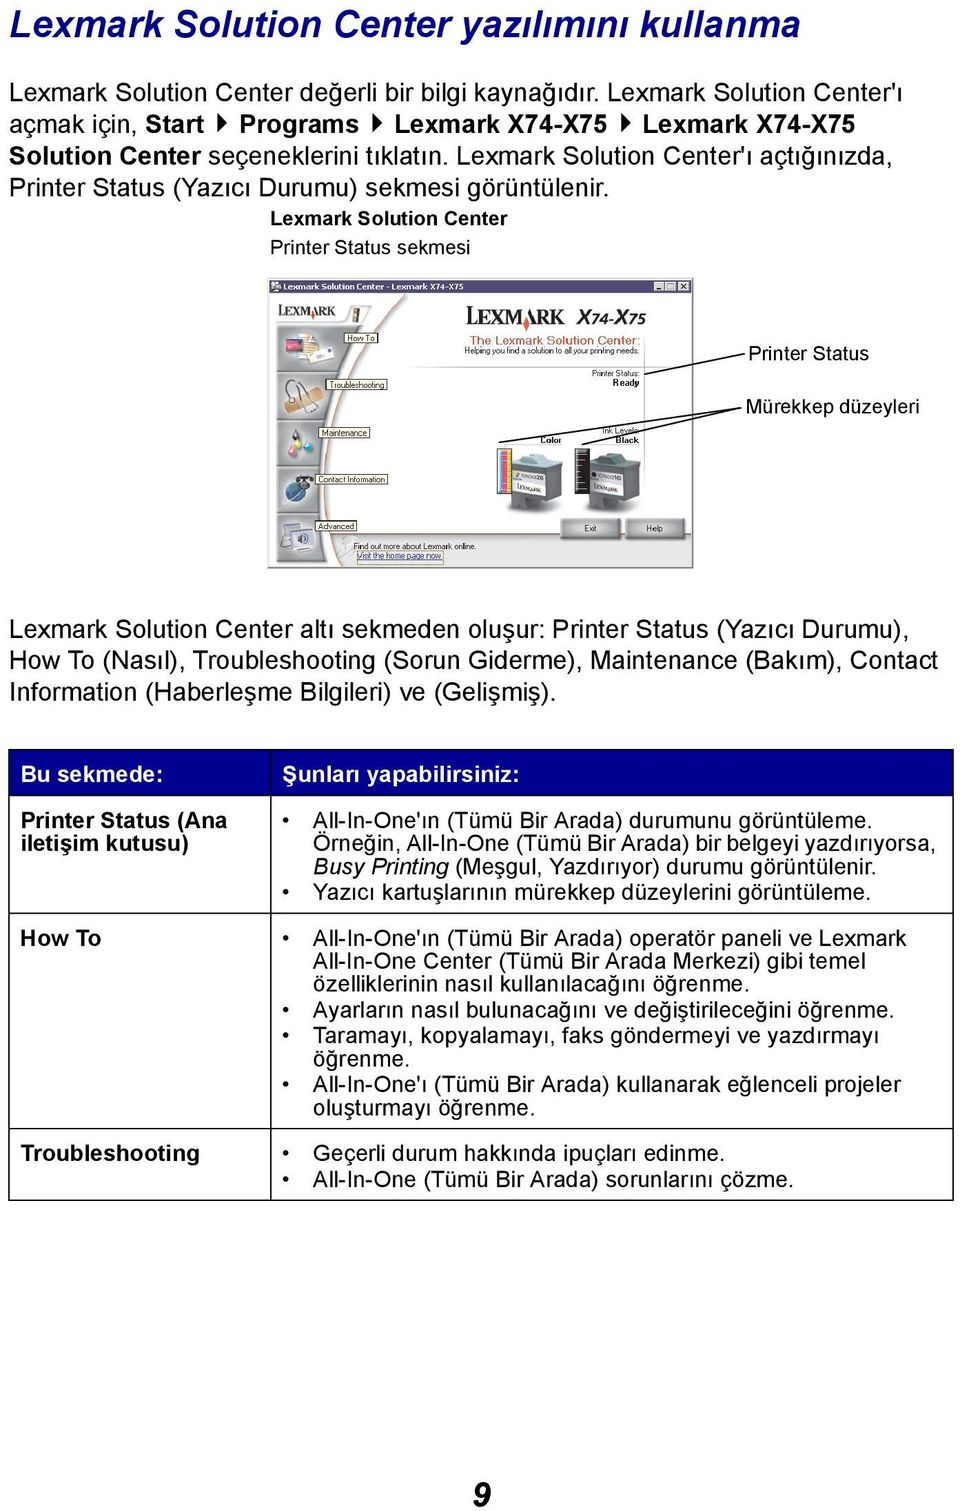 Lexmark Solution Center'ı açtığınızda, Printer Status (Yazıcı Durumu) sekmesi görüntülenir.